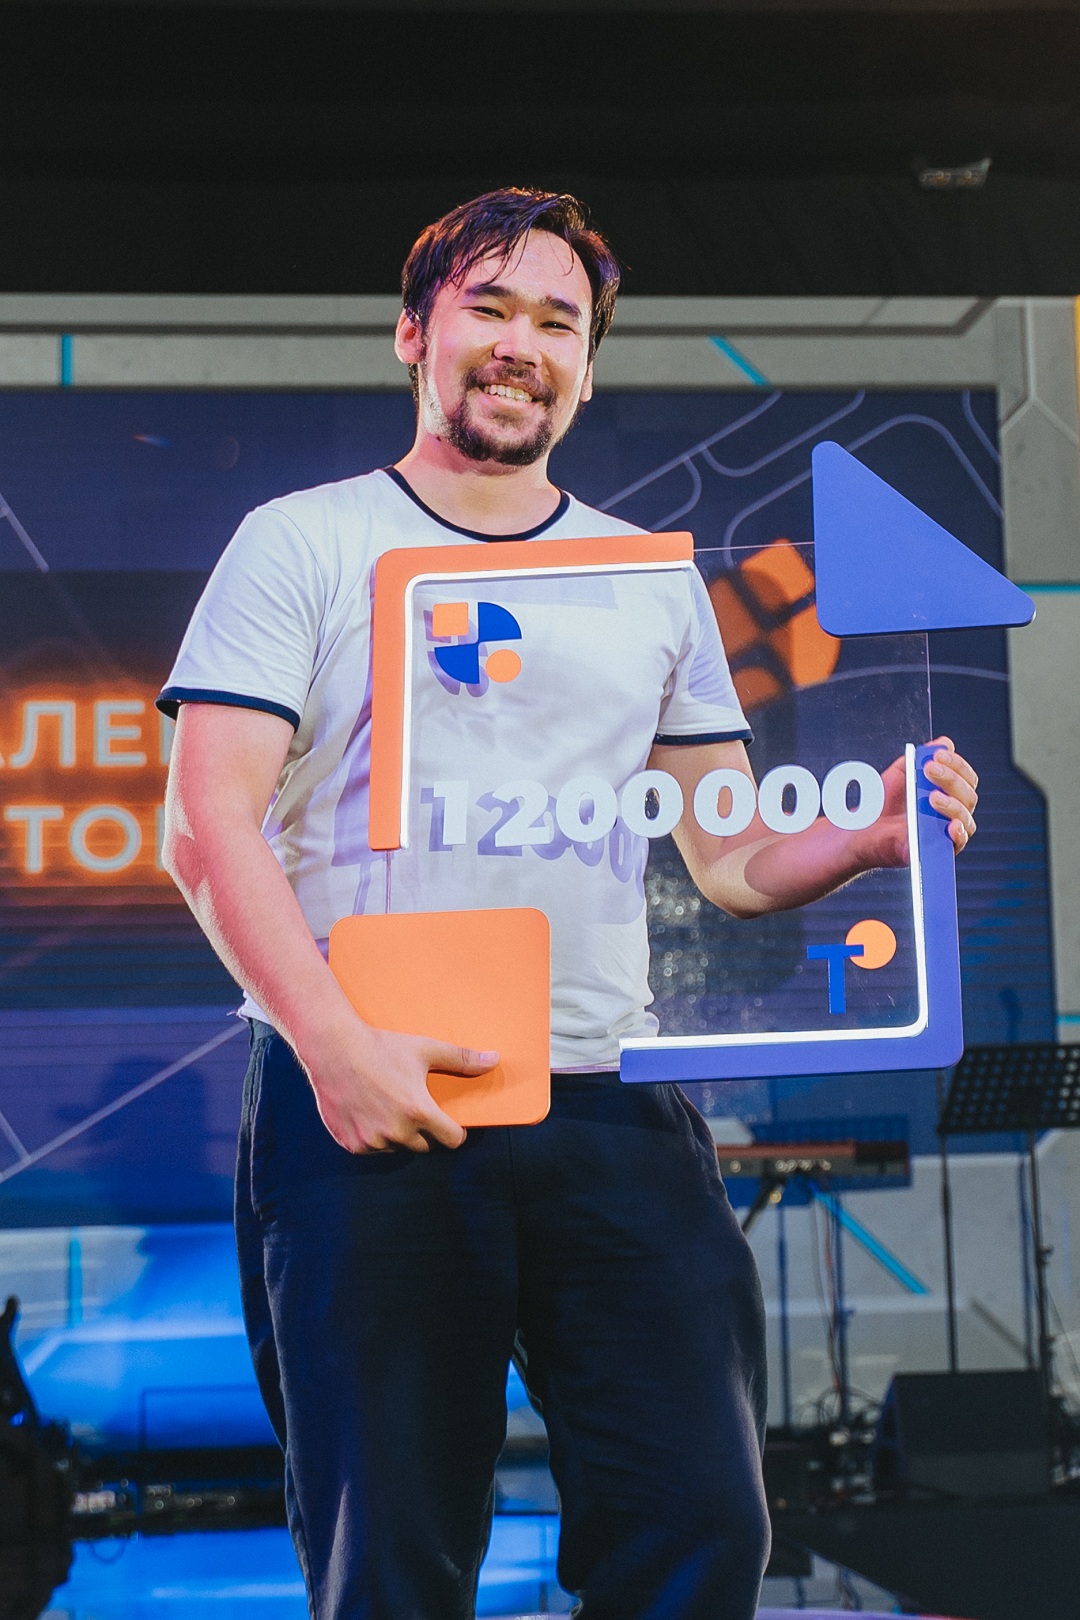 Представитель Ленинградской области победил в грантовом конкурсе на «Тавриде»